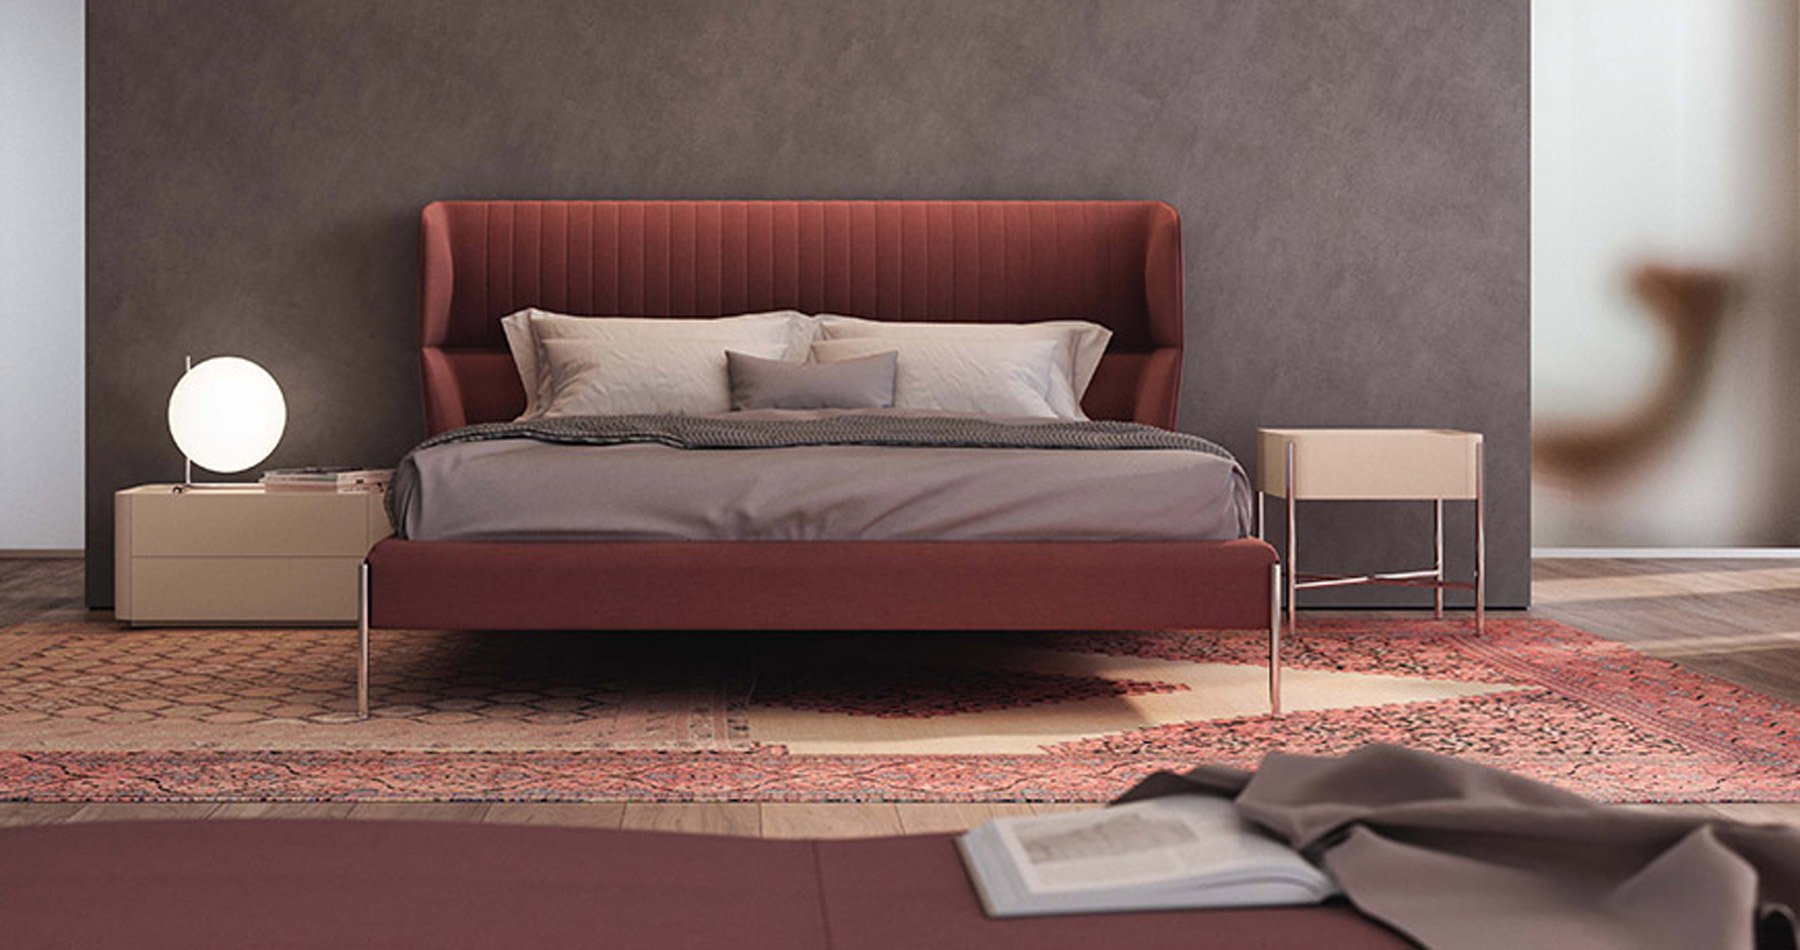 Mut zur Farbe: Ein rotes Bett mit beigen Nachttischen sorgt für ein kuscheliges Ambiente